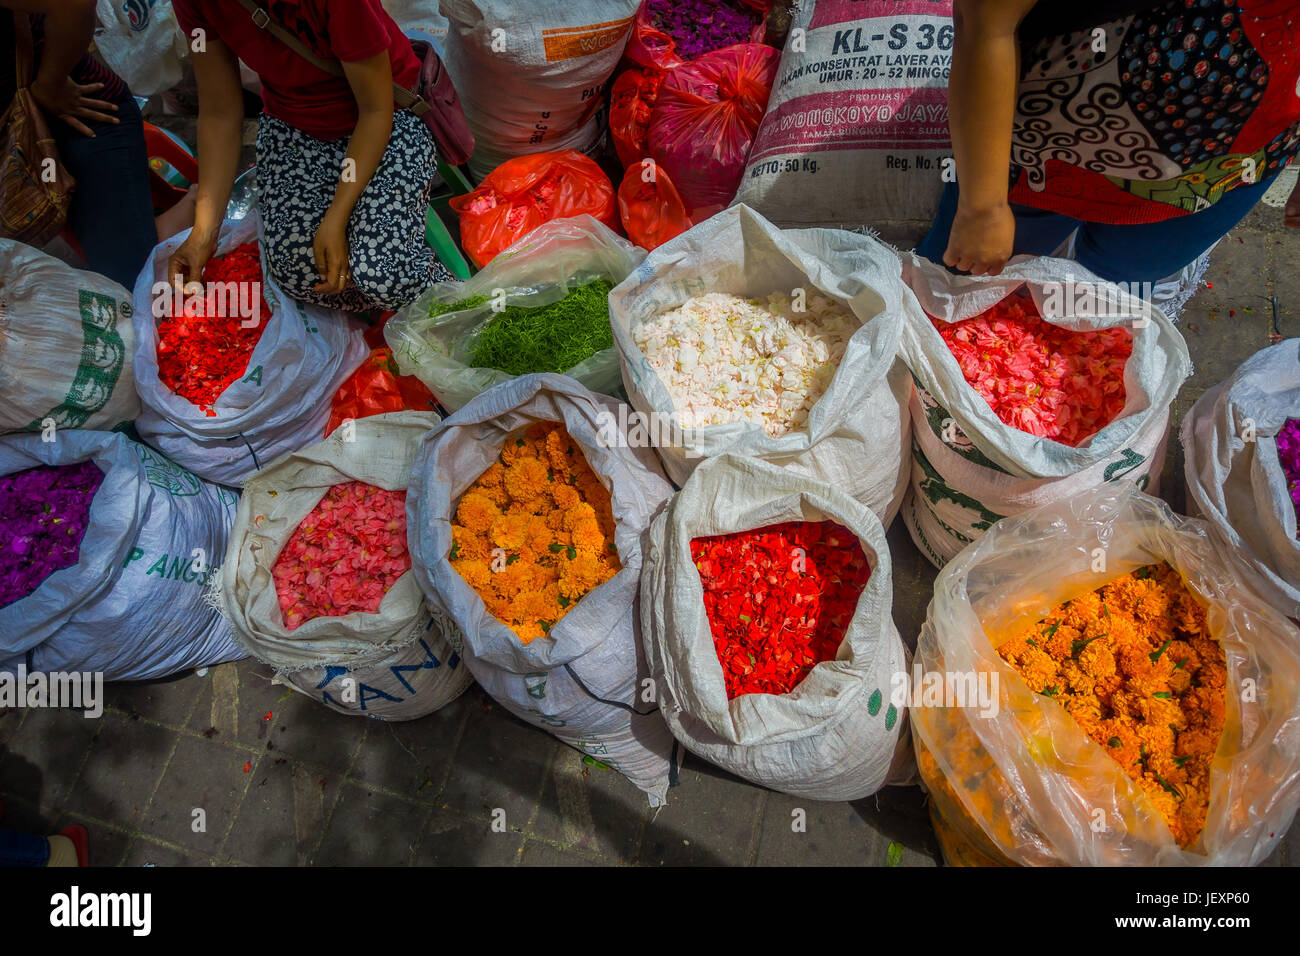 Outdoor-Bali Blumenmarkt. Blumen werden täglich von balinesischen Hindus als symbolische Opfergaben an Schläfen, in bunten Körben verwendet. Stockfoto